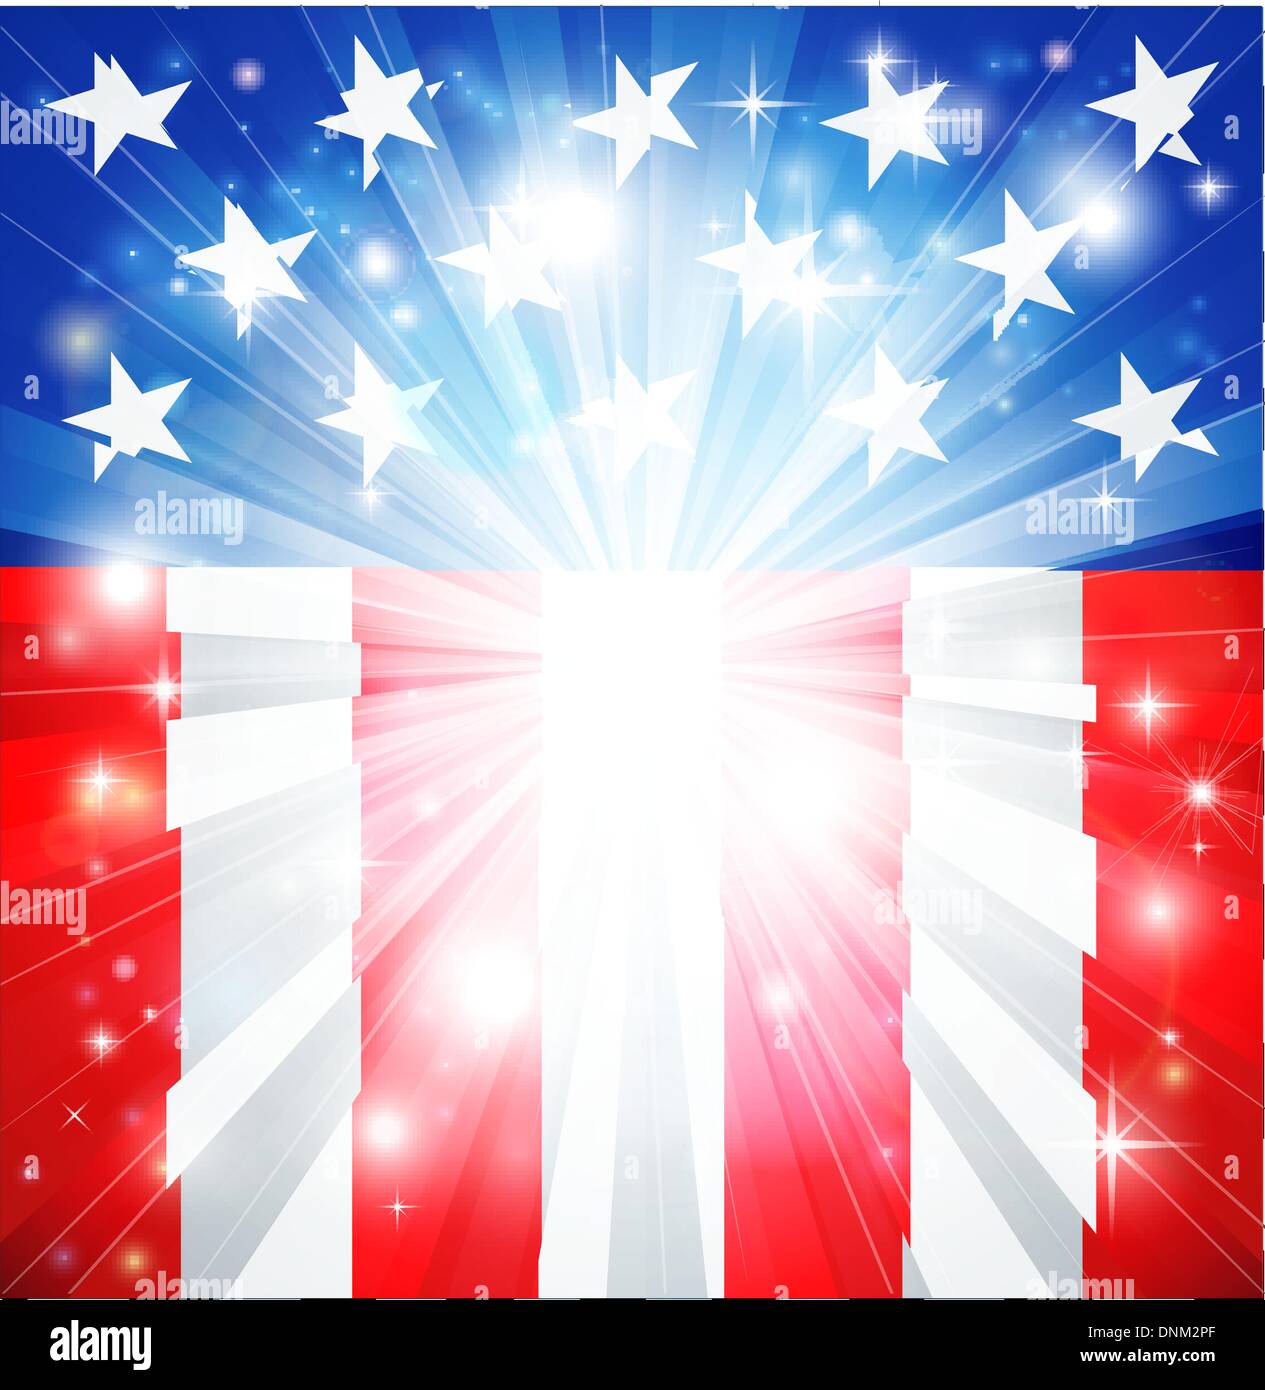 Drapeau américain fond patriotique avec des étoiles et des rayures et de l'espace du texte dans le centre Illustration de Vecteur